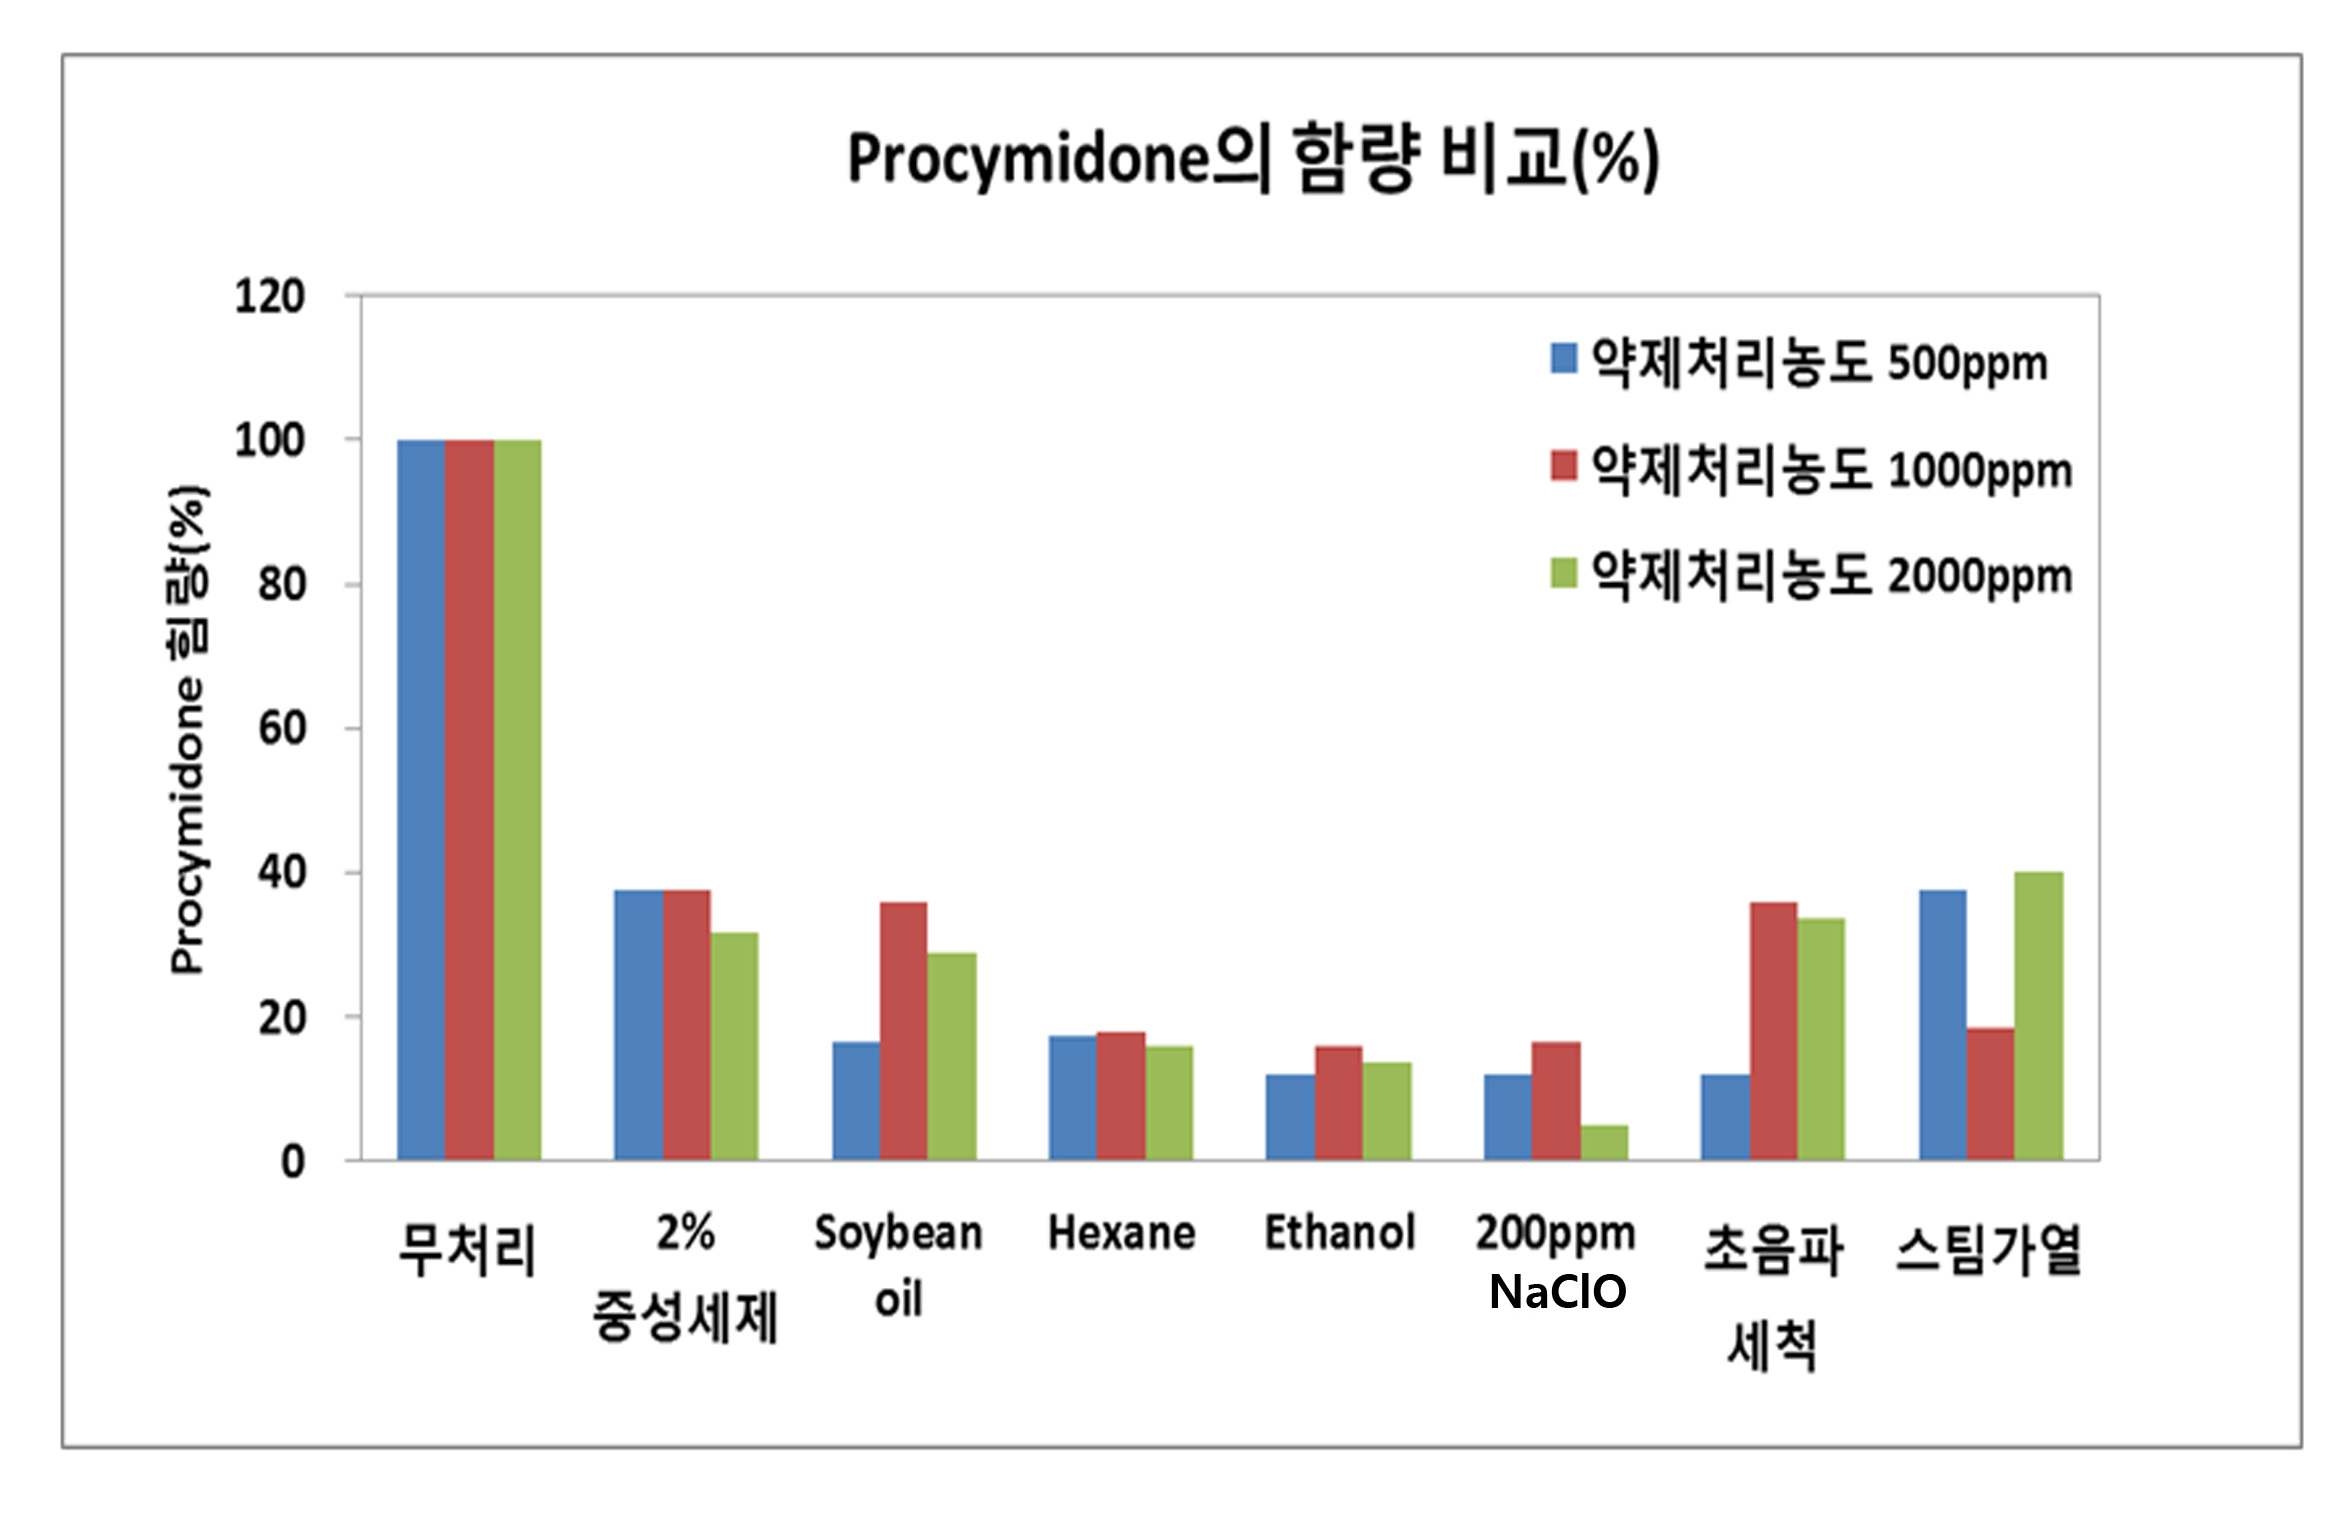 물리 ㆍ 화학적 처리방법에 의한 procymidone의 잔류률(%)